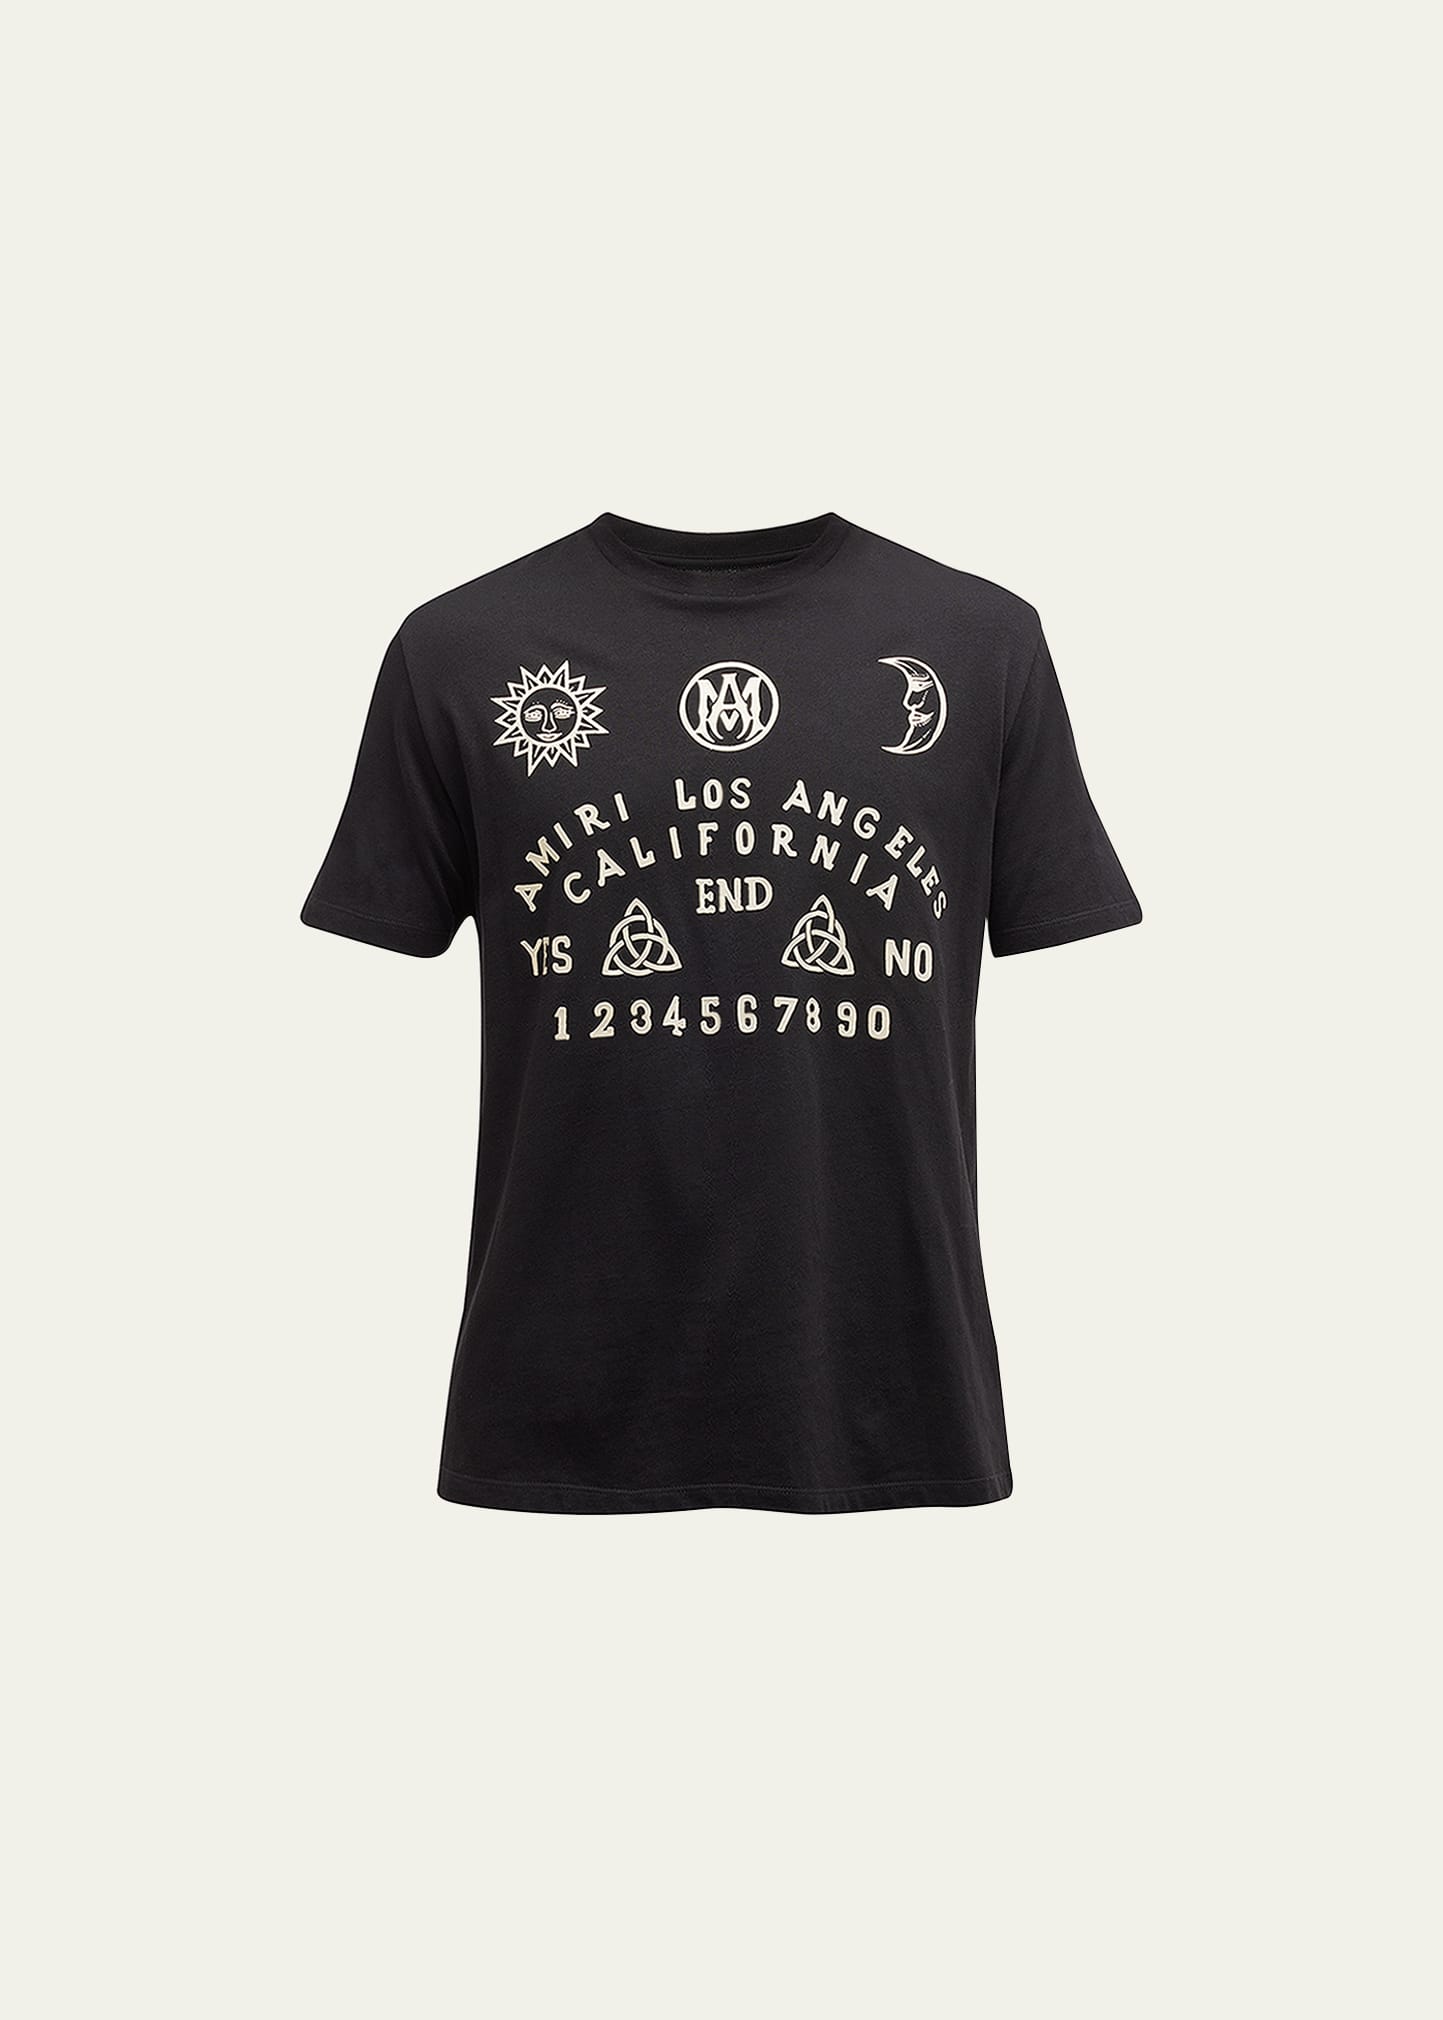 Men's Ouija Board T-Shirt